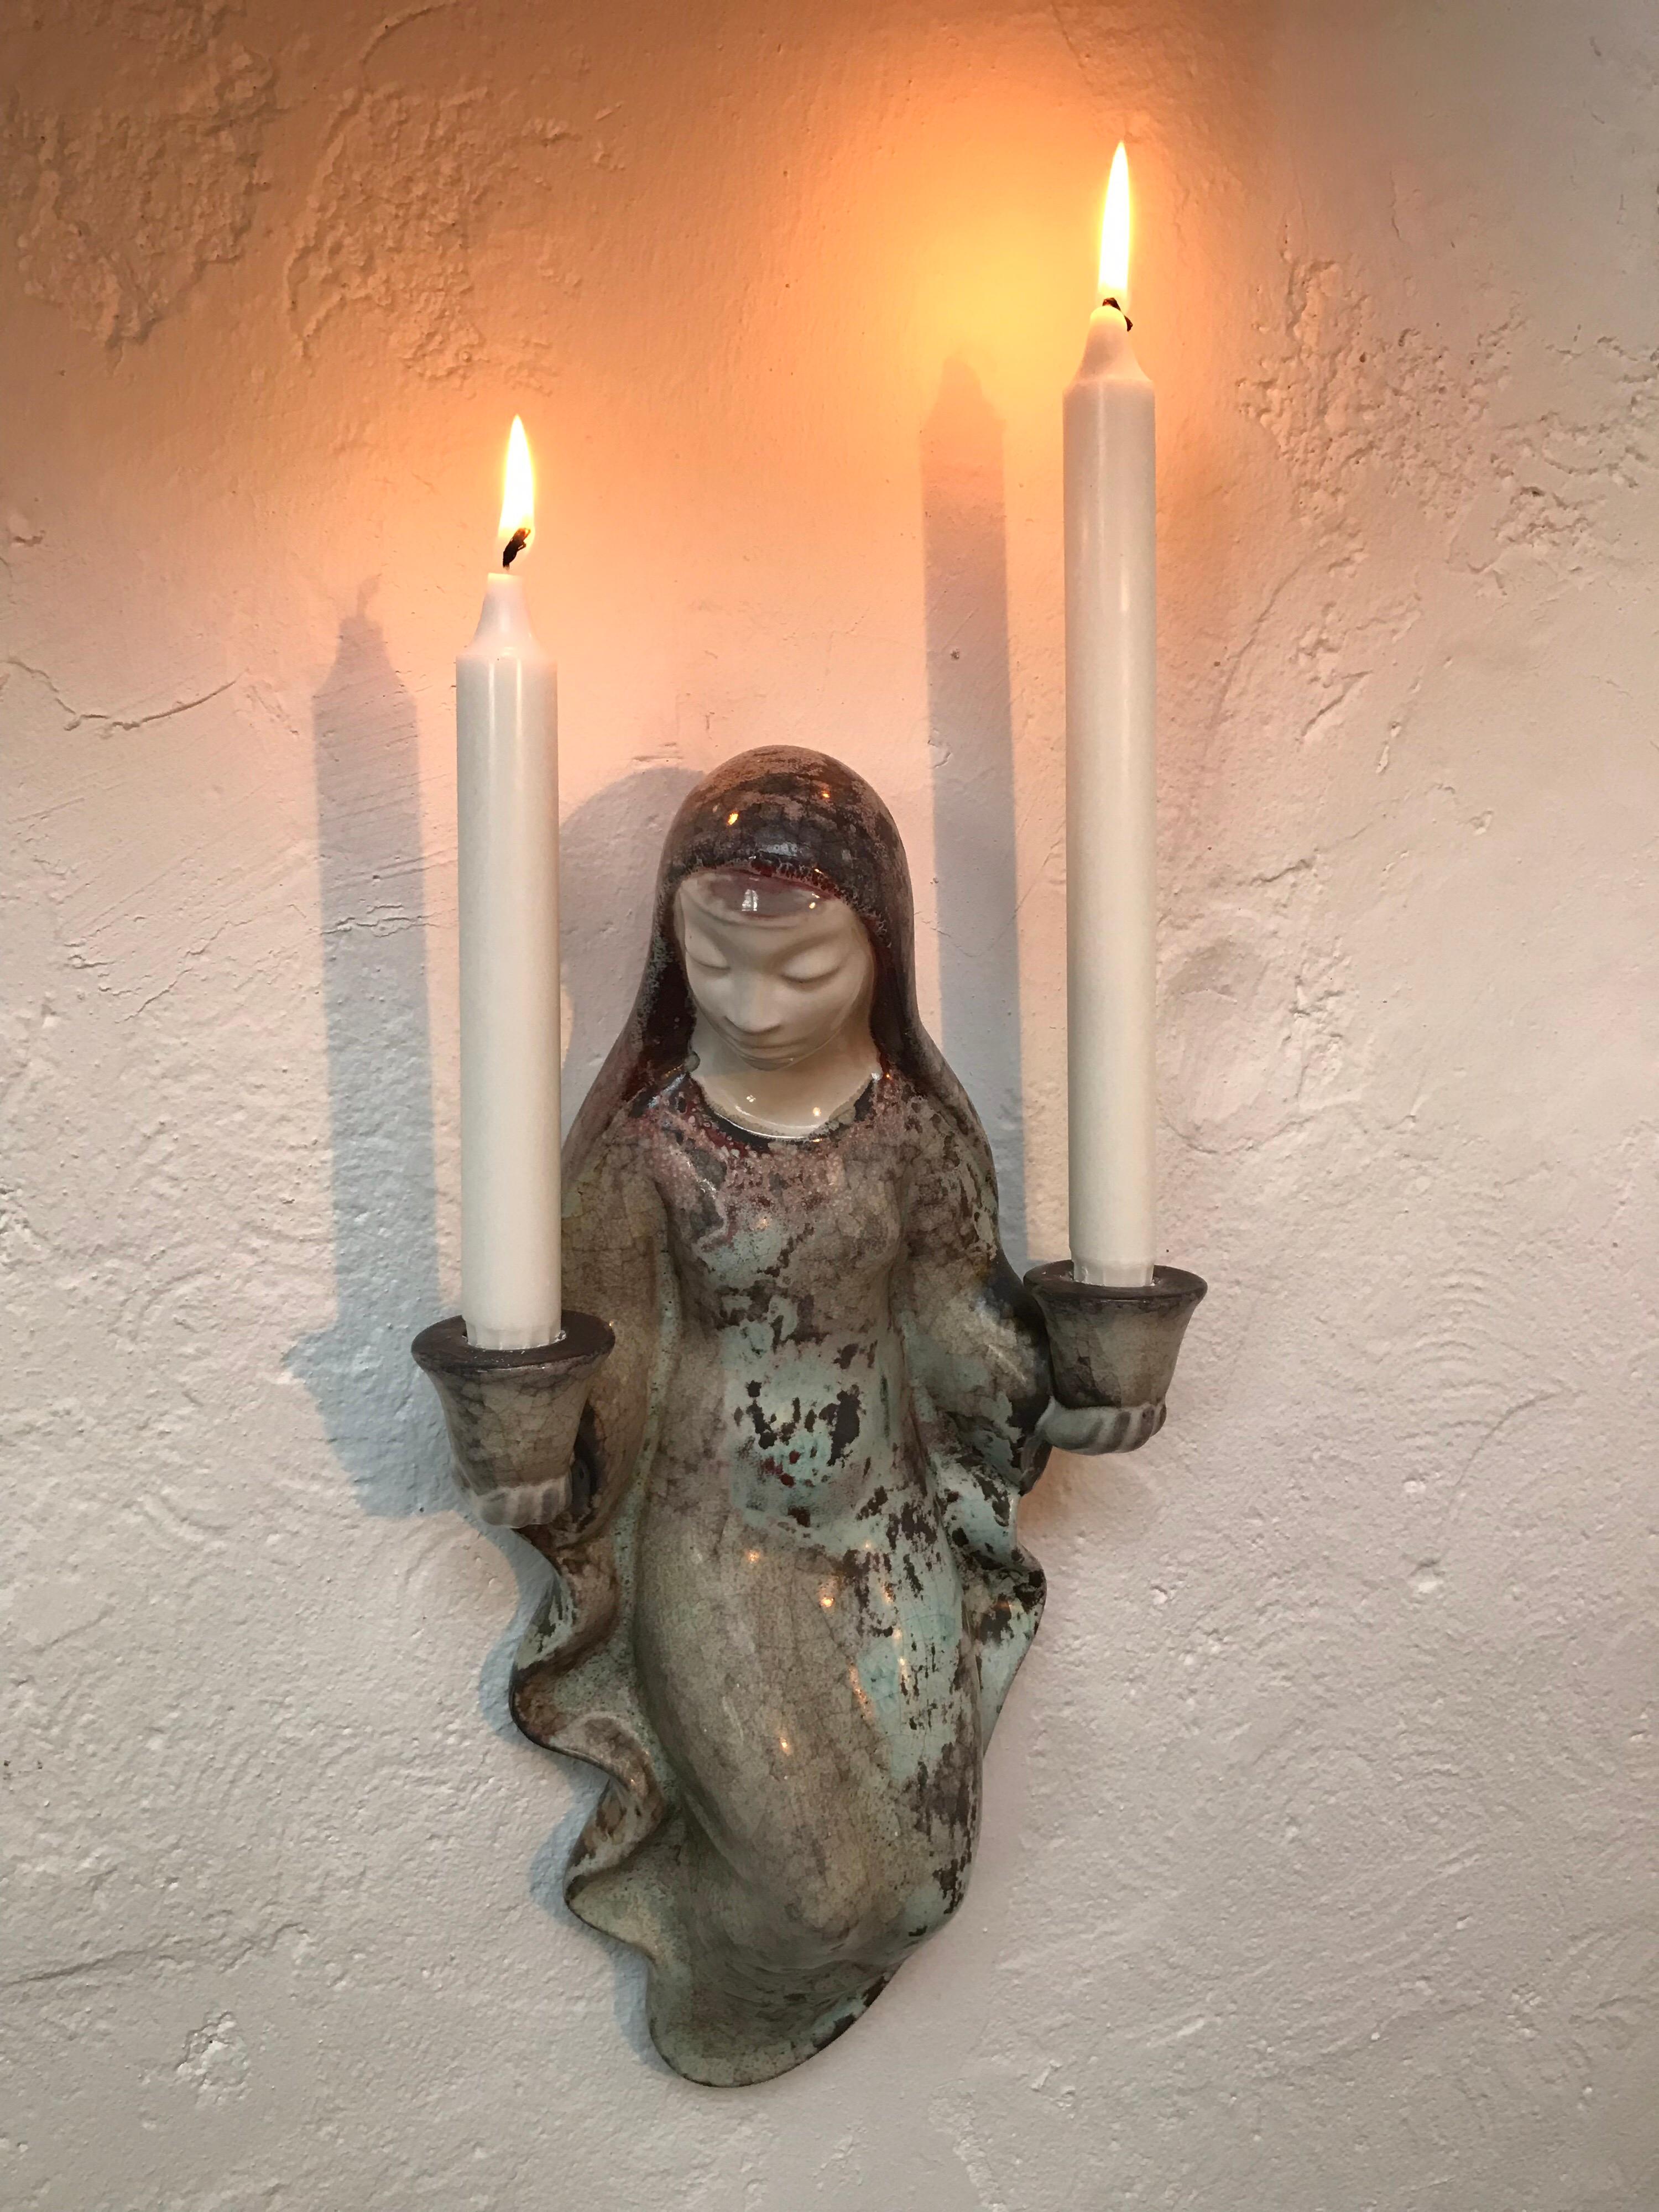 Vintage Michael Andersen Keramik Kerzenhalter möglicherweise in Form einer Madonna 
Traumhaft schön und ein so wunderbares Stück Fayence 
Michael Andersen begann 1771 in Rønne auf der dänischen Insel Bornholm mit der Herstellung von Keramik und